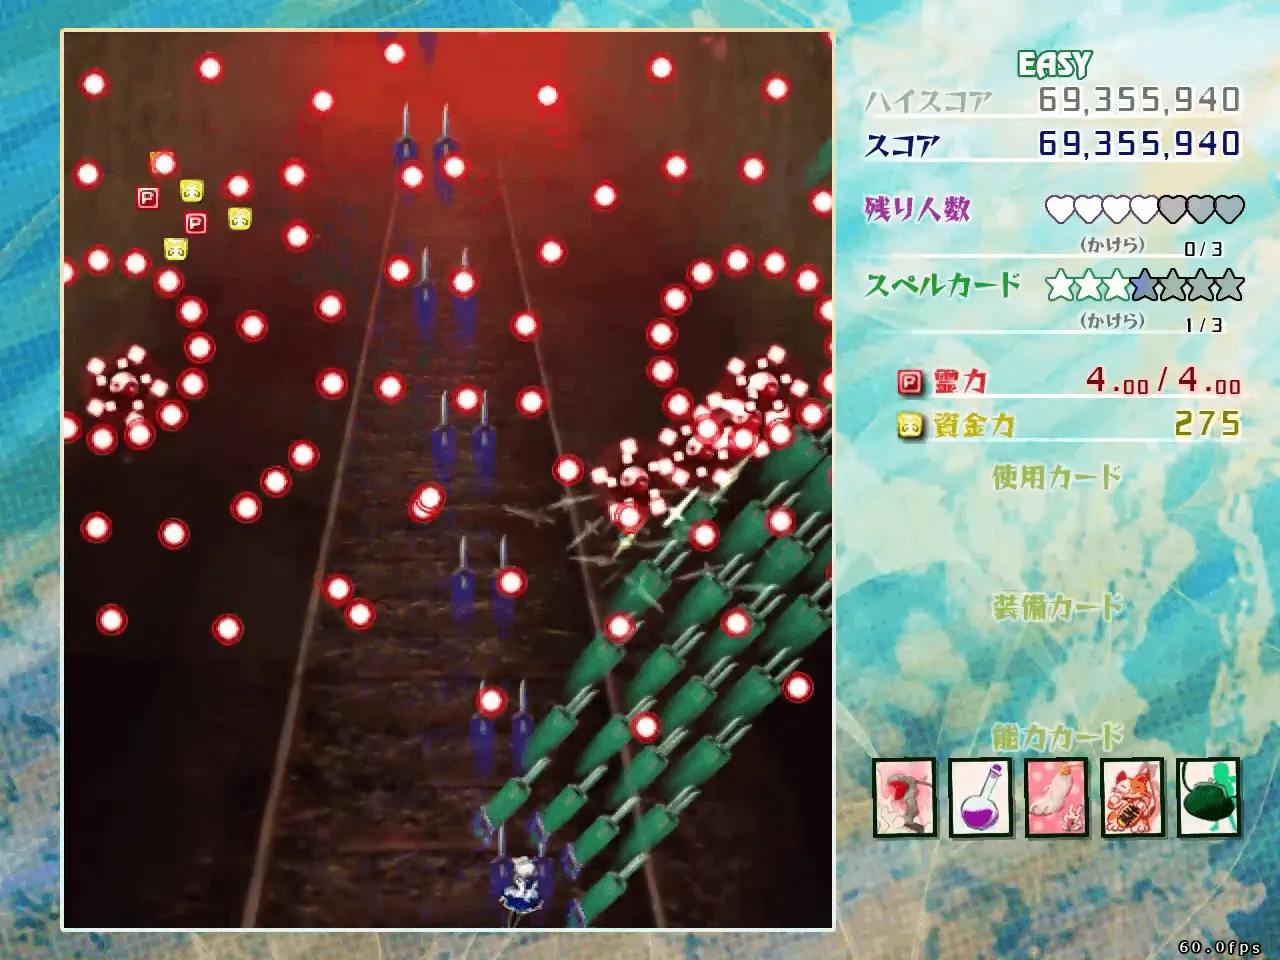 『東方虹龍洞』のゲーム画面